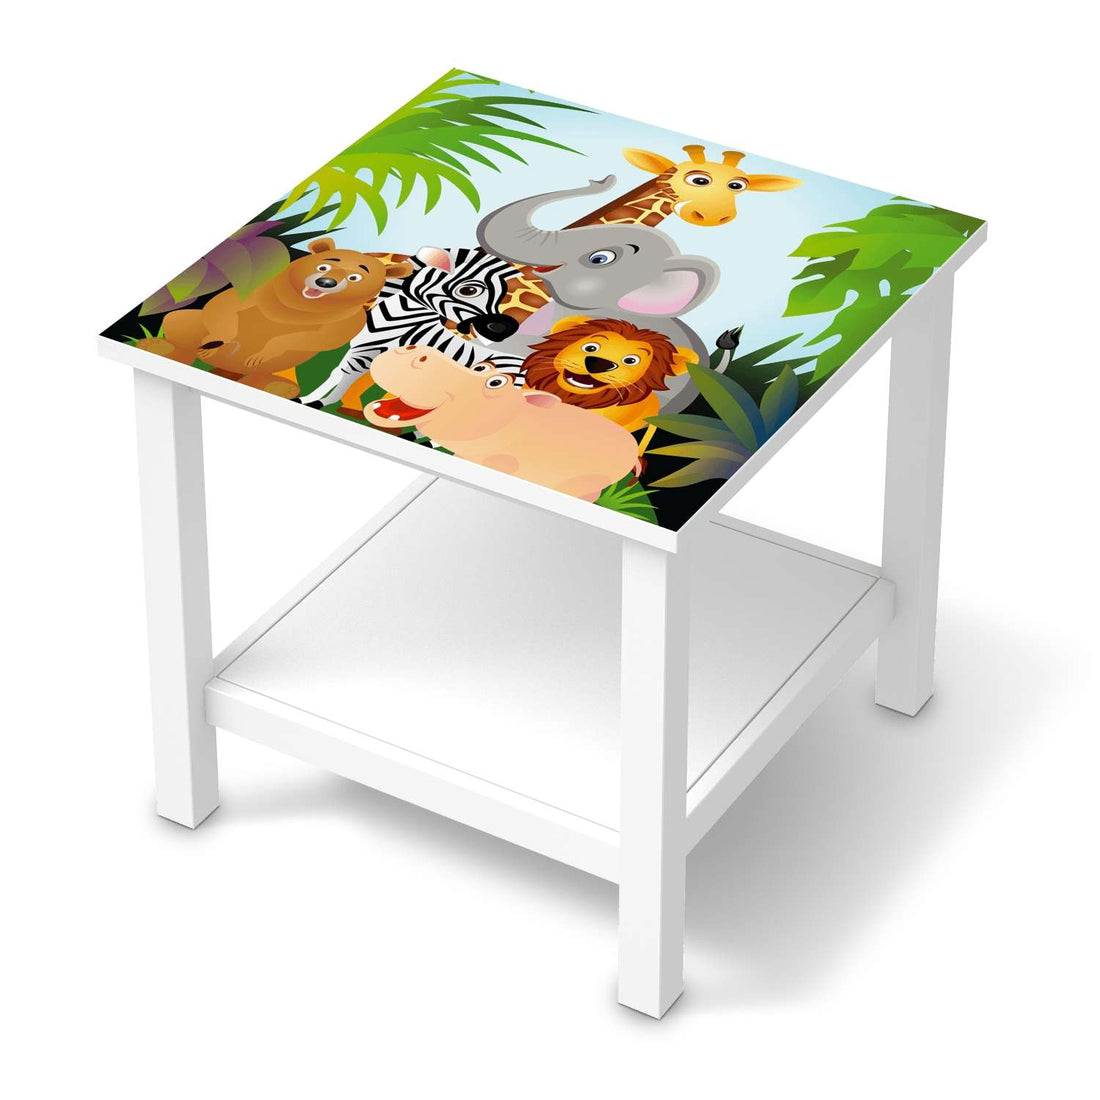 Möbel Klebefolie Wild Animals - IKEA Hemnes Beistelltisch 55x55 cm  - weiss